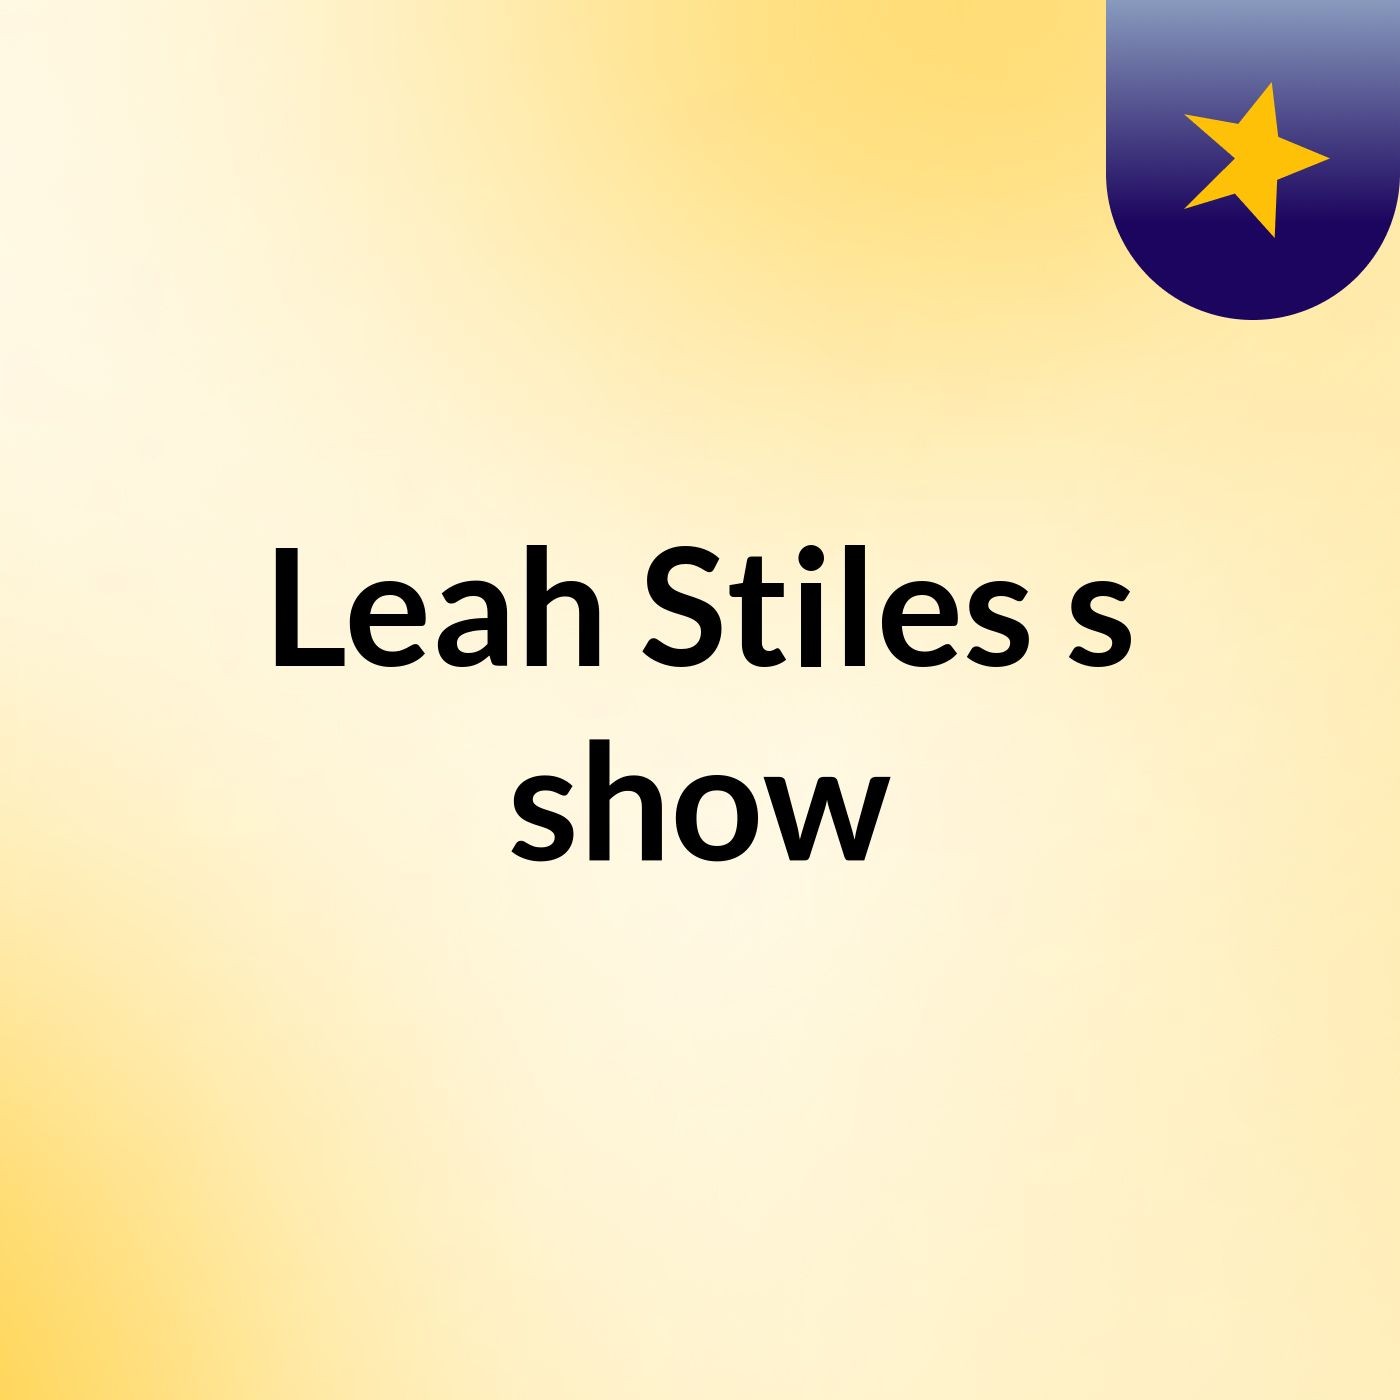 Leah Stiles's show